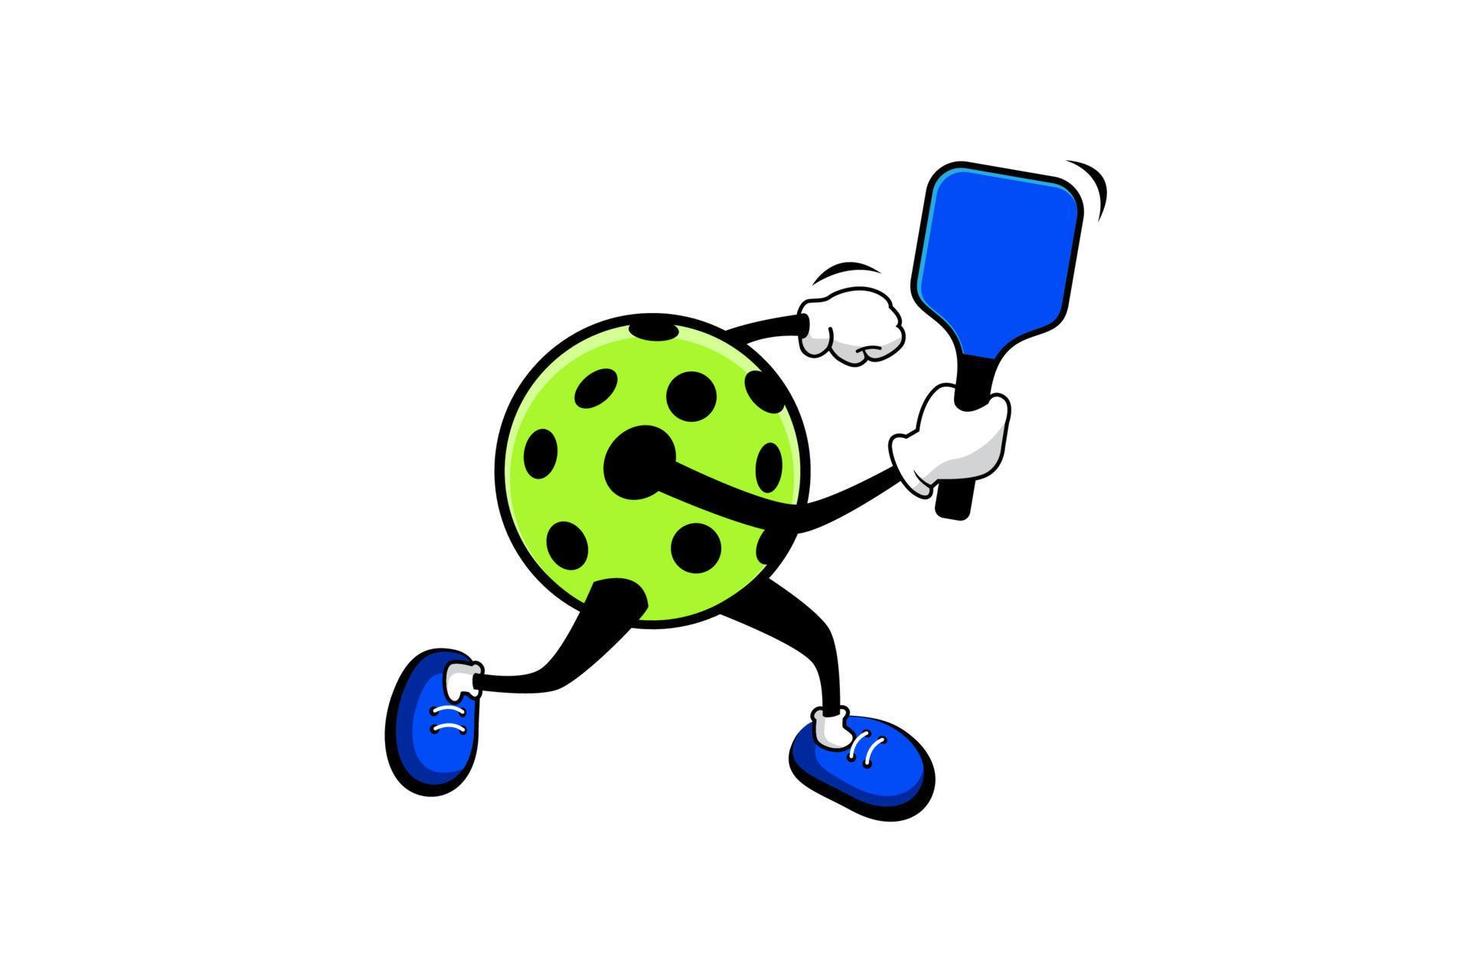 logo de pickleball avec personnage de dessin animé en position de revers, pour toute entreprise en particulier faisant un logo, des affiches, des dépliants, des autocollants, des mèmes, etc. vecteur